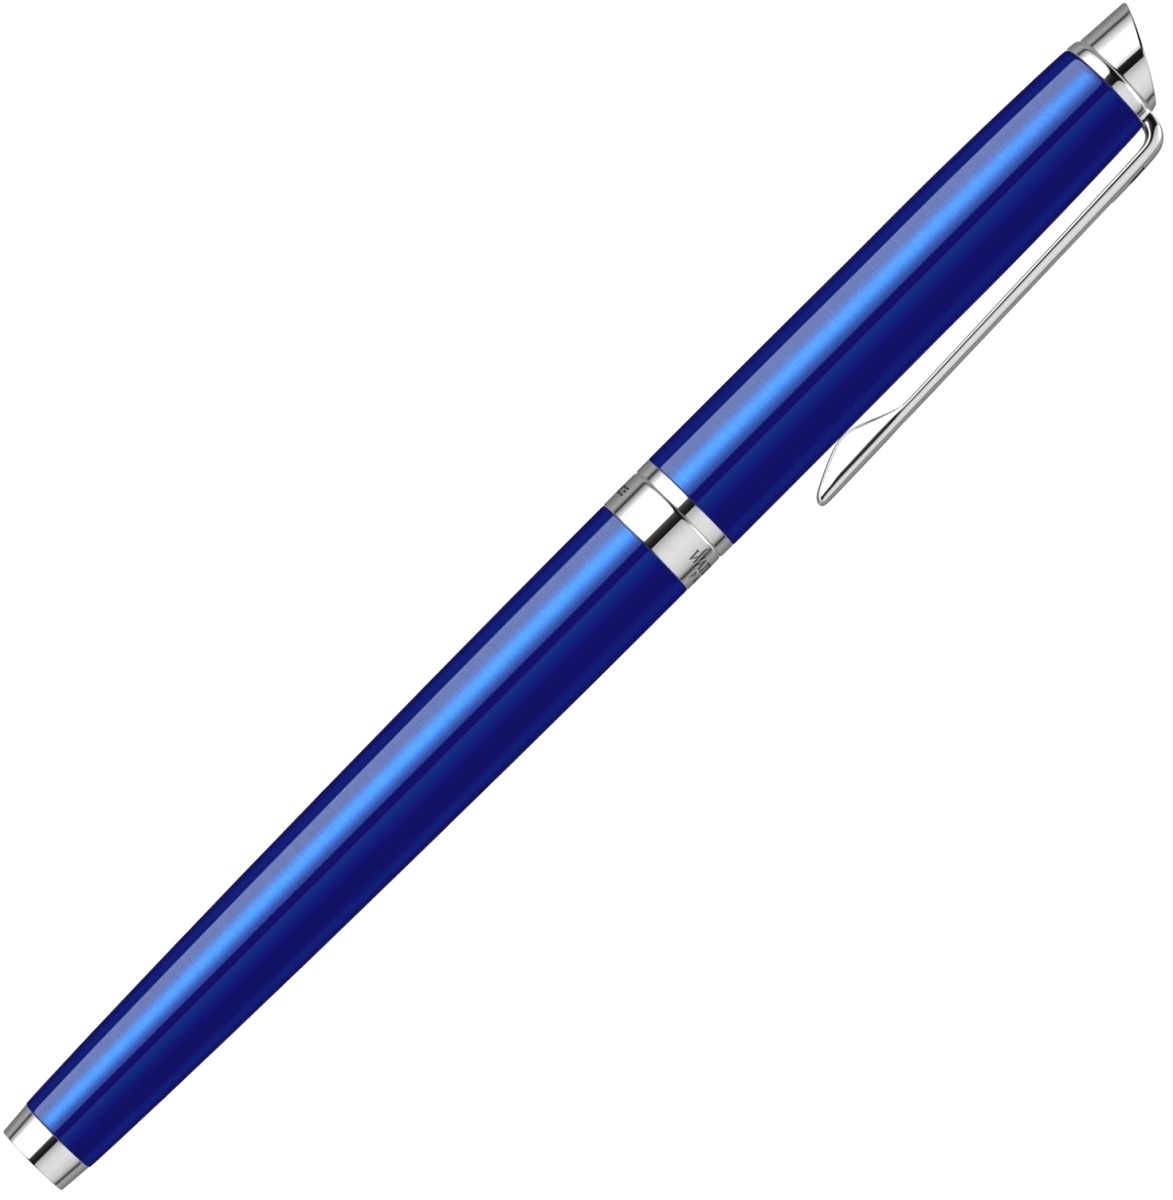  Ручка перьевая Waterman Hemisphere 2018, Bright Blue CT (Перо F), фото 7